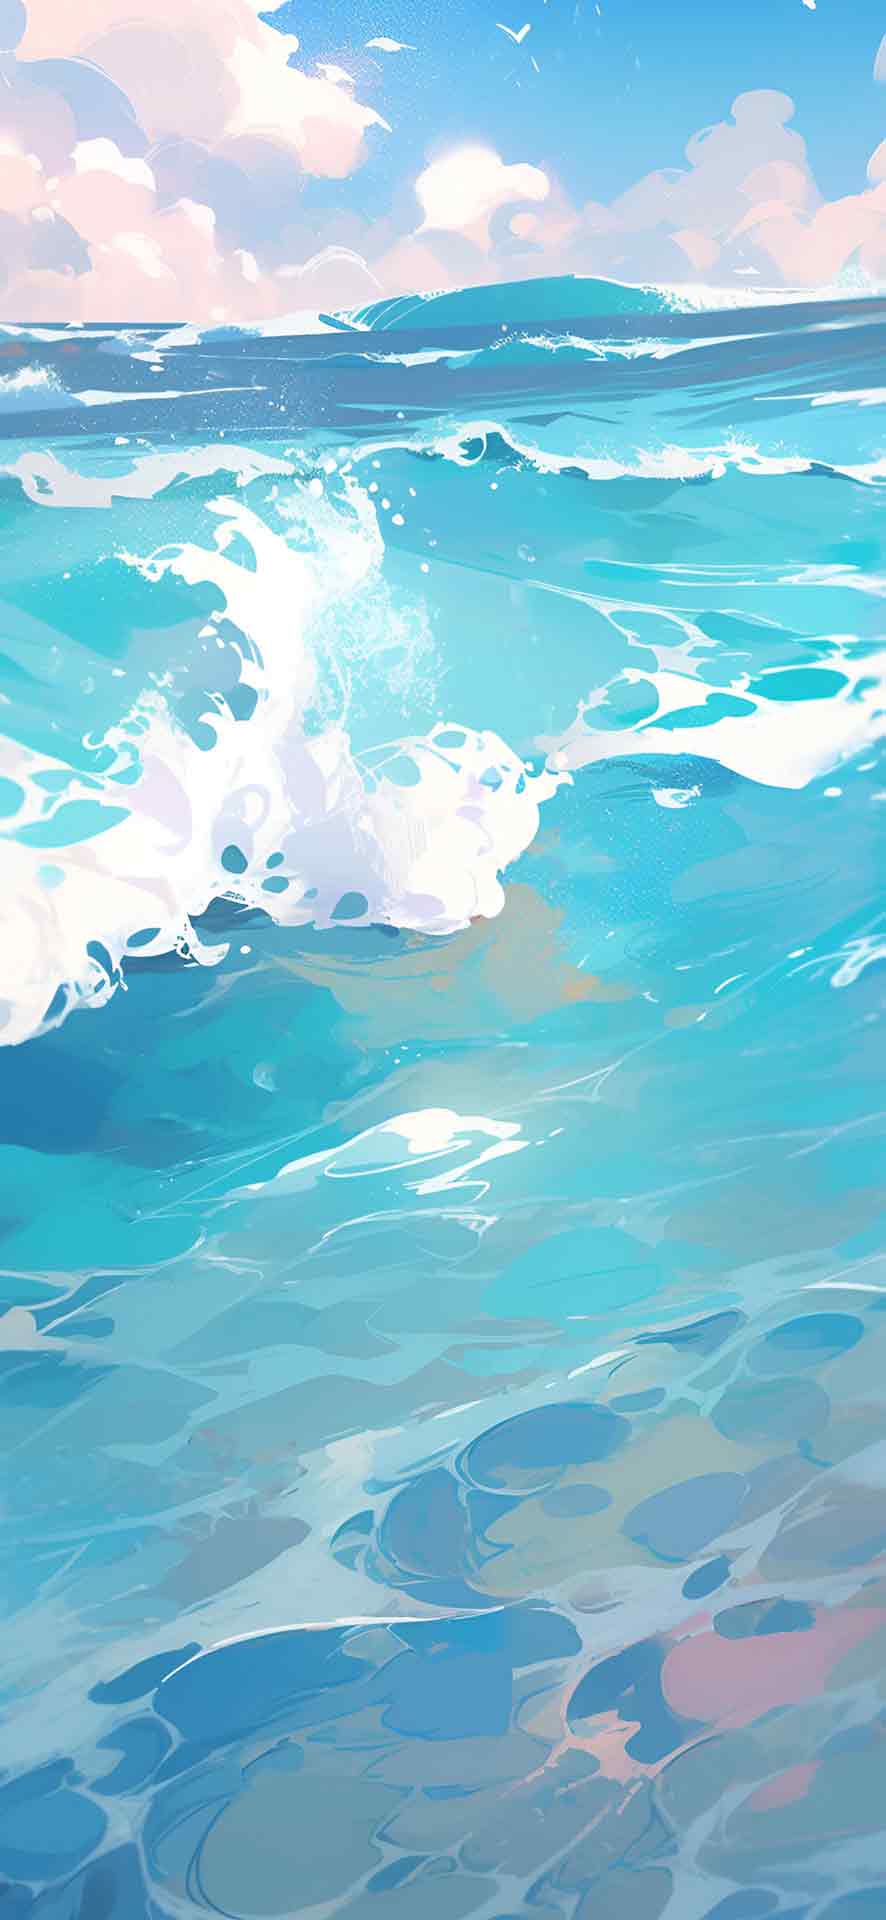 无尽的蓝色大海和蔚蓝的天空壁纸